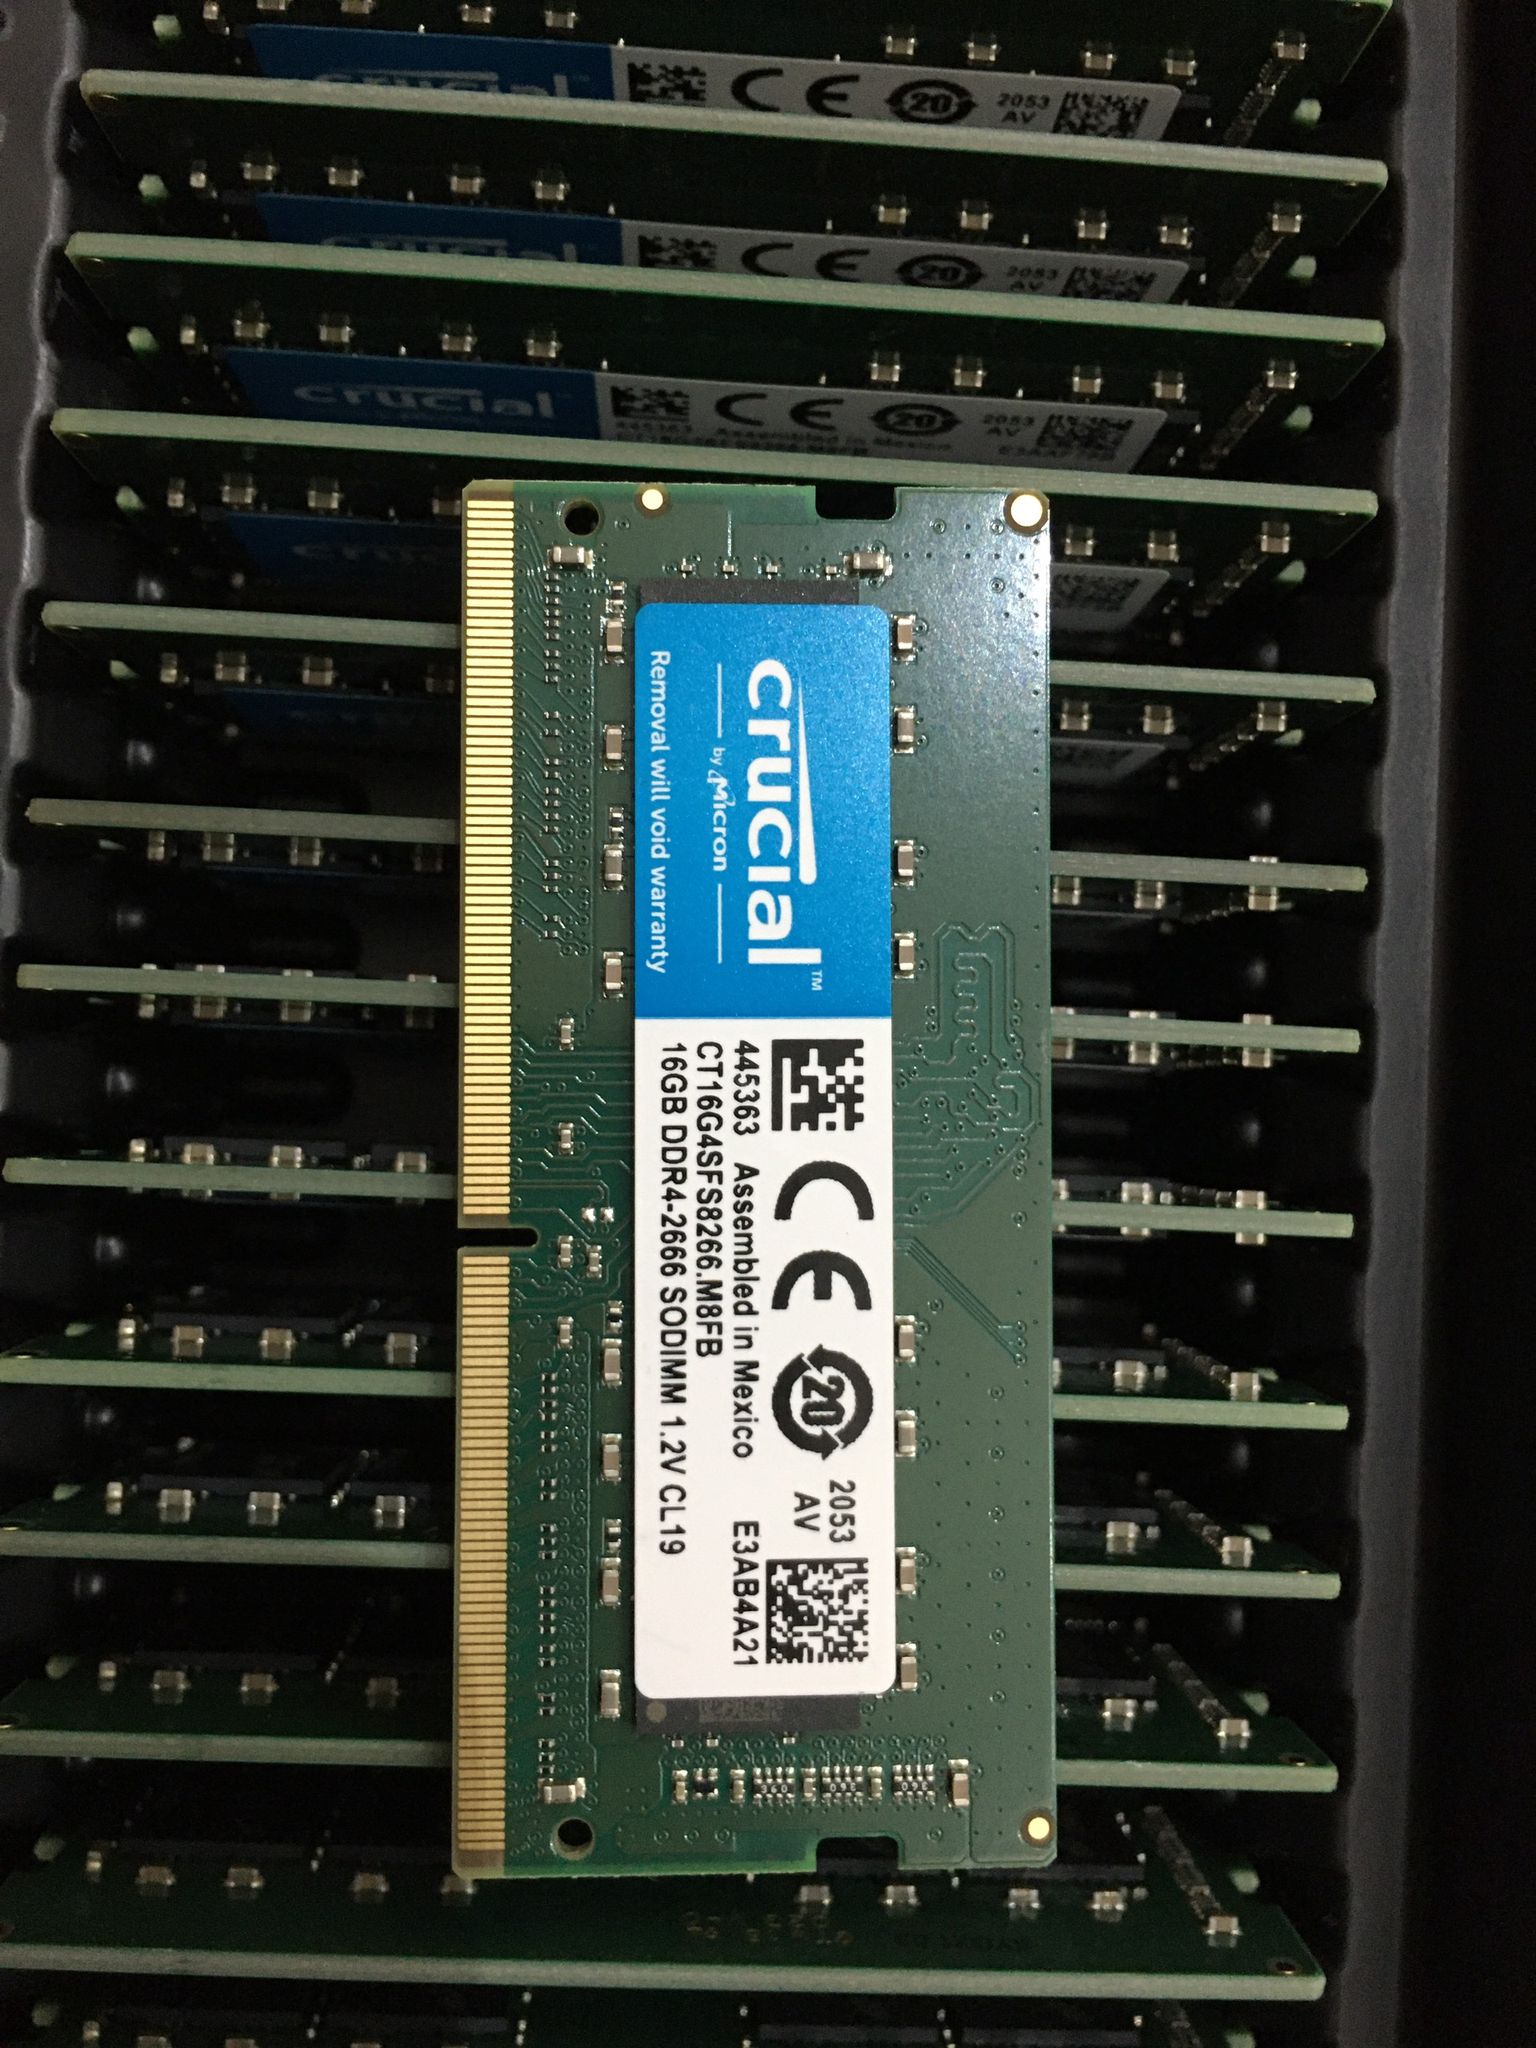 RAM Laptop Crucial 16GB DDR4 2666MHz